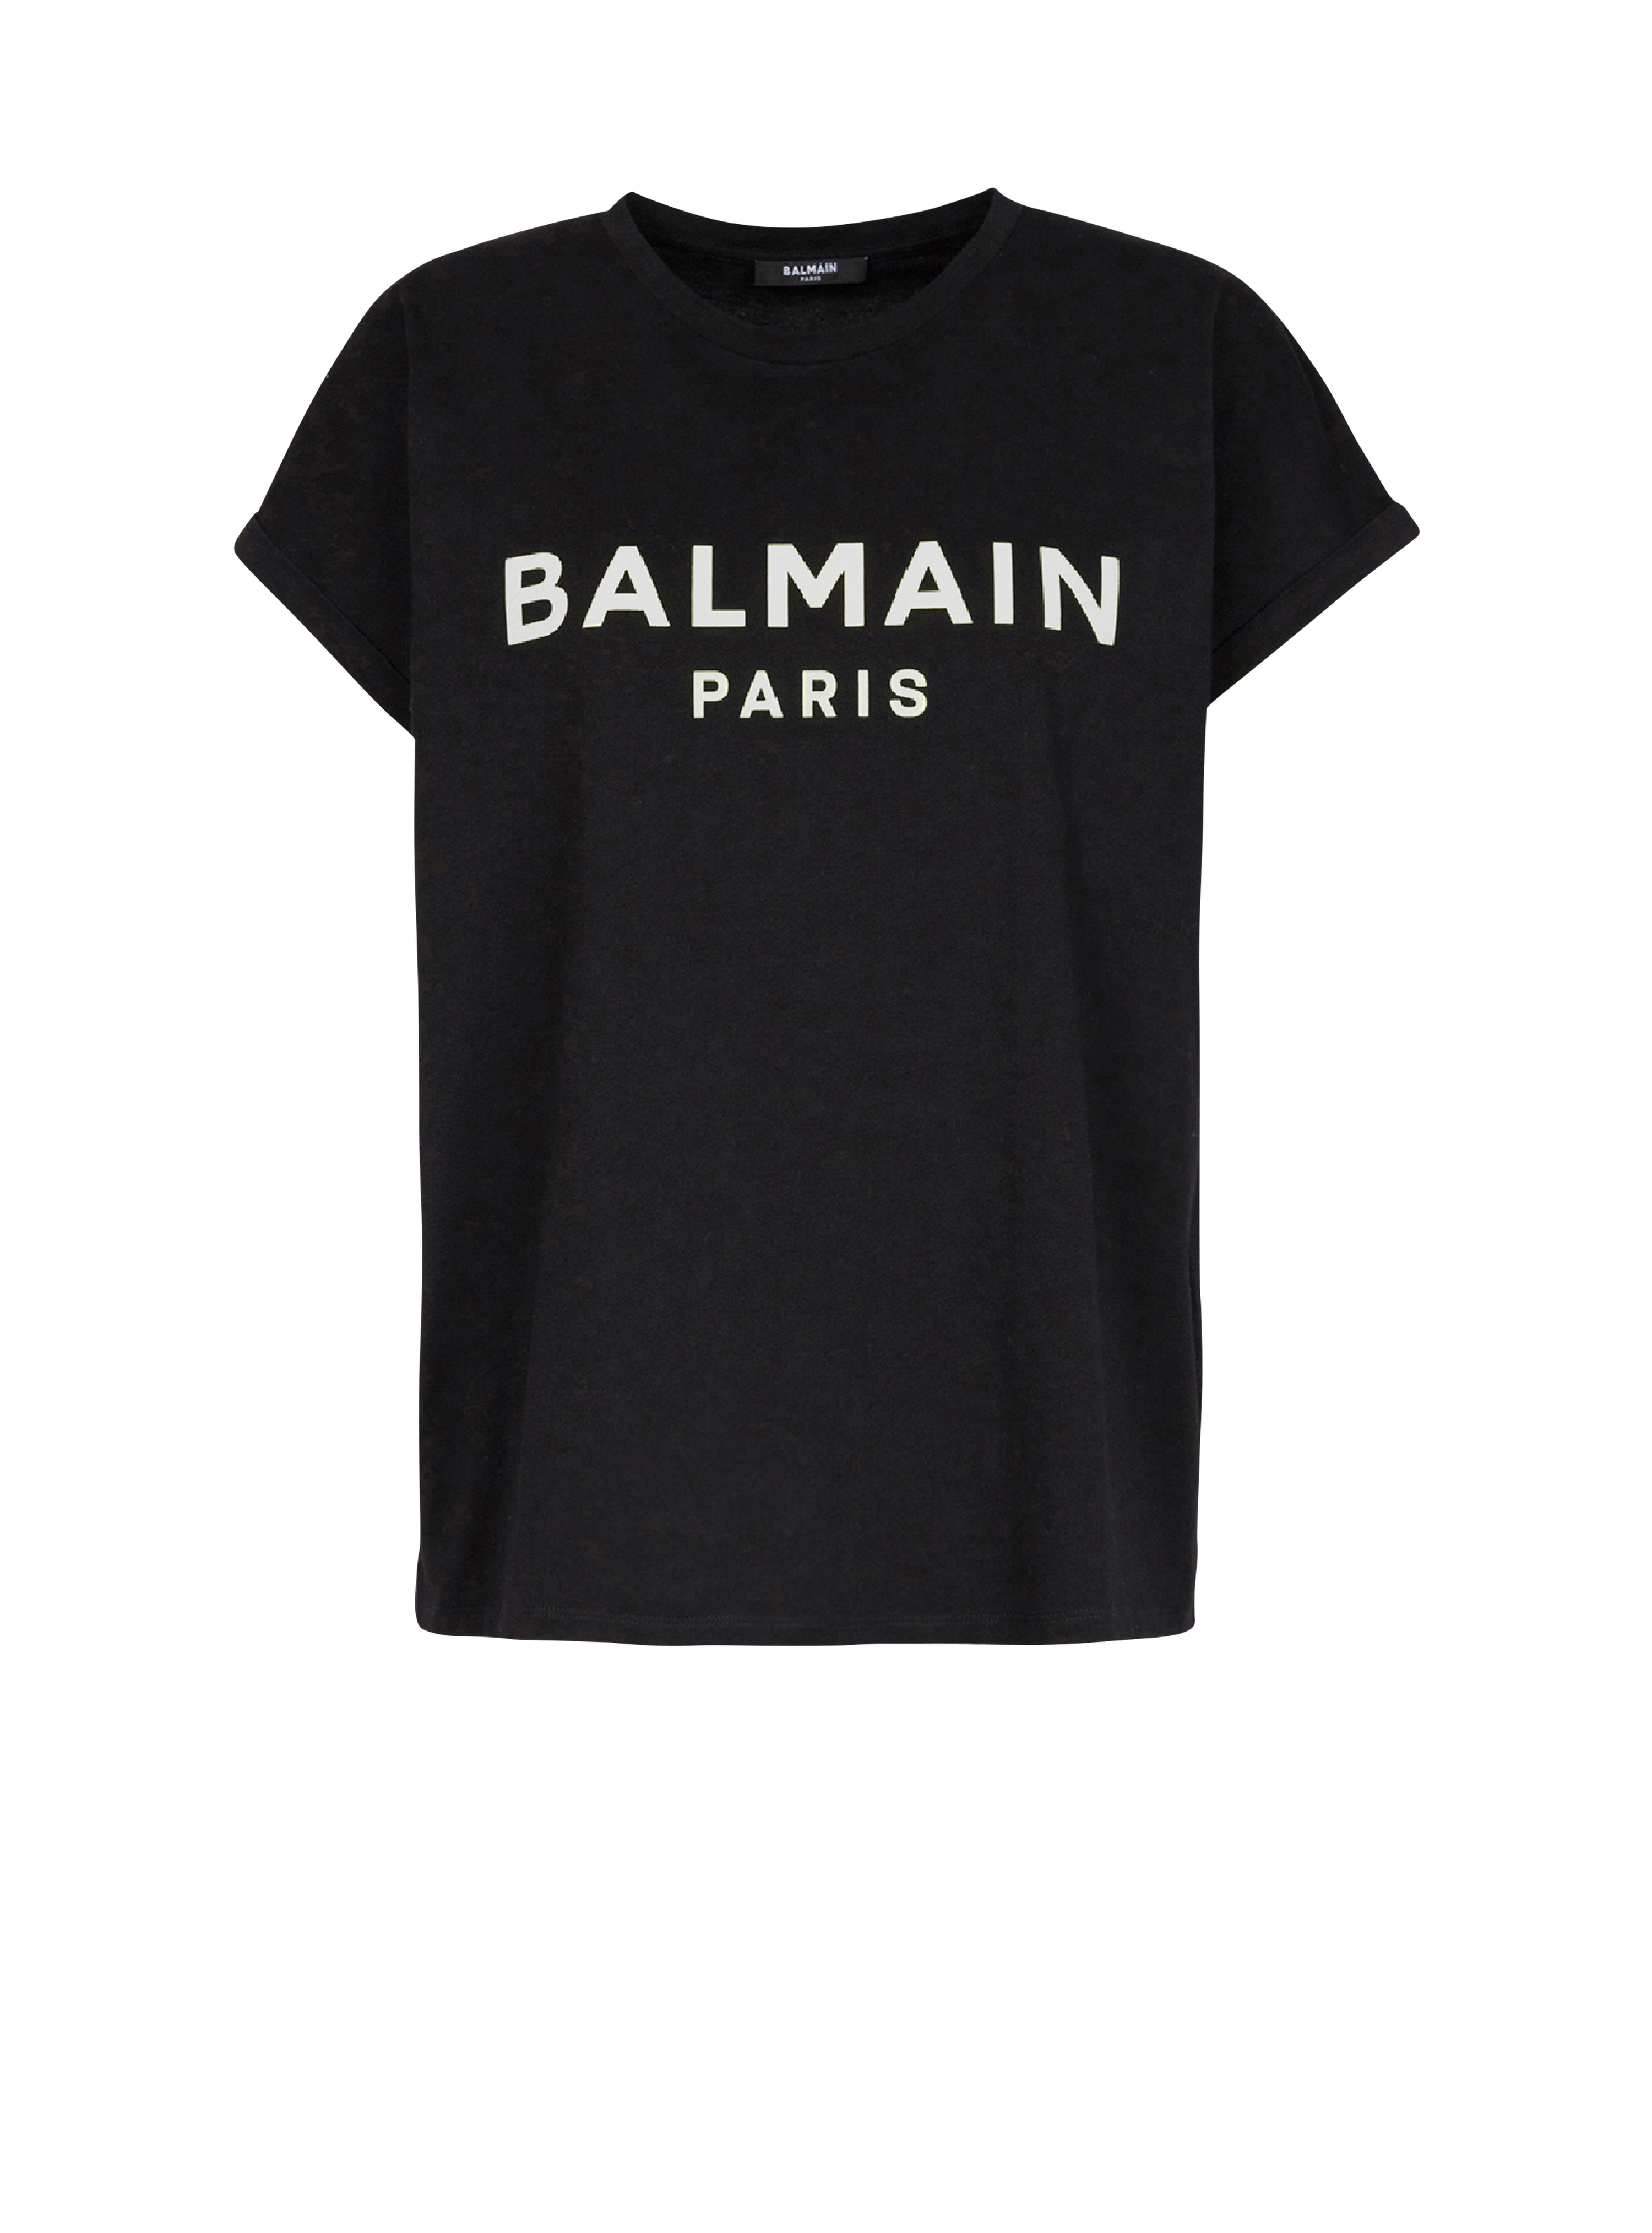 T-shirt in cotone eco-design con logo Balmain, nero